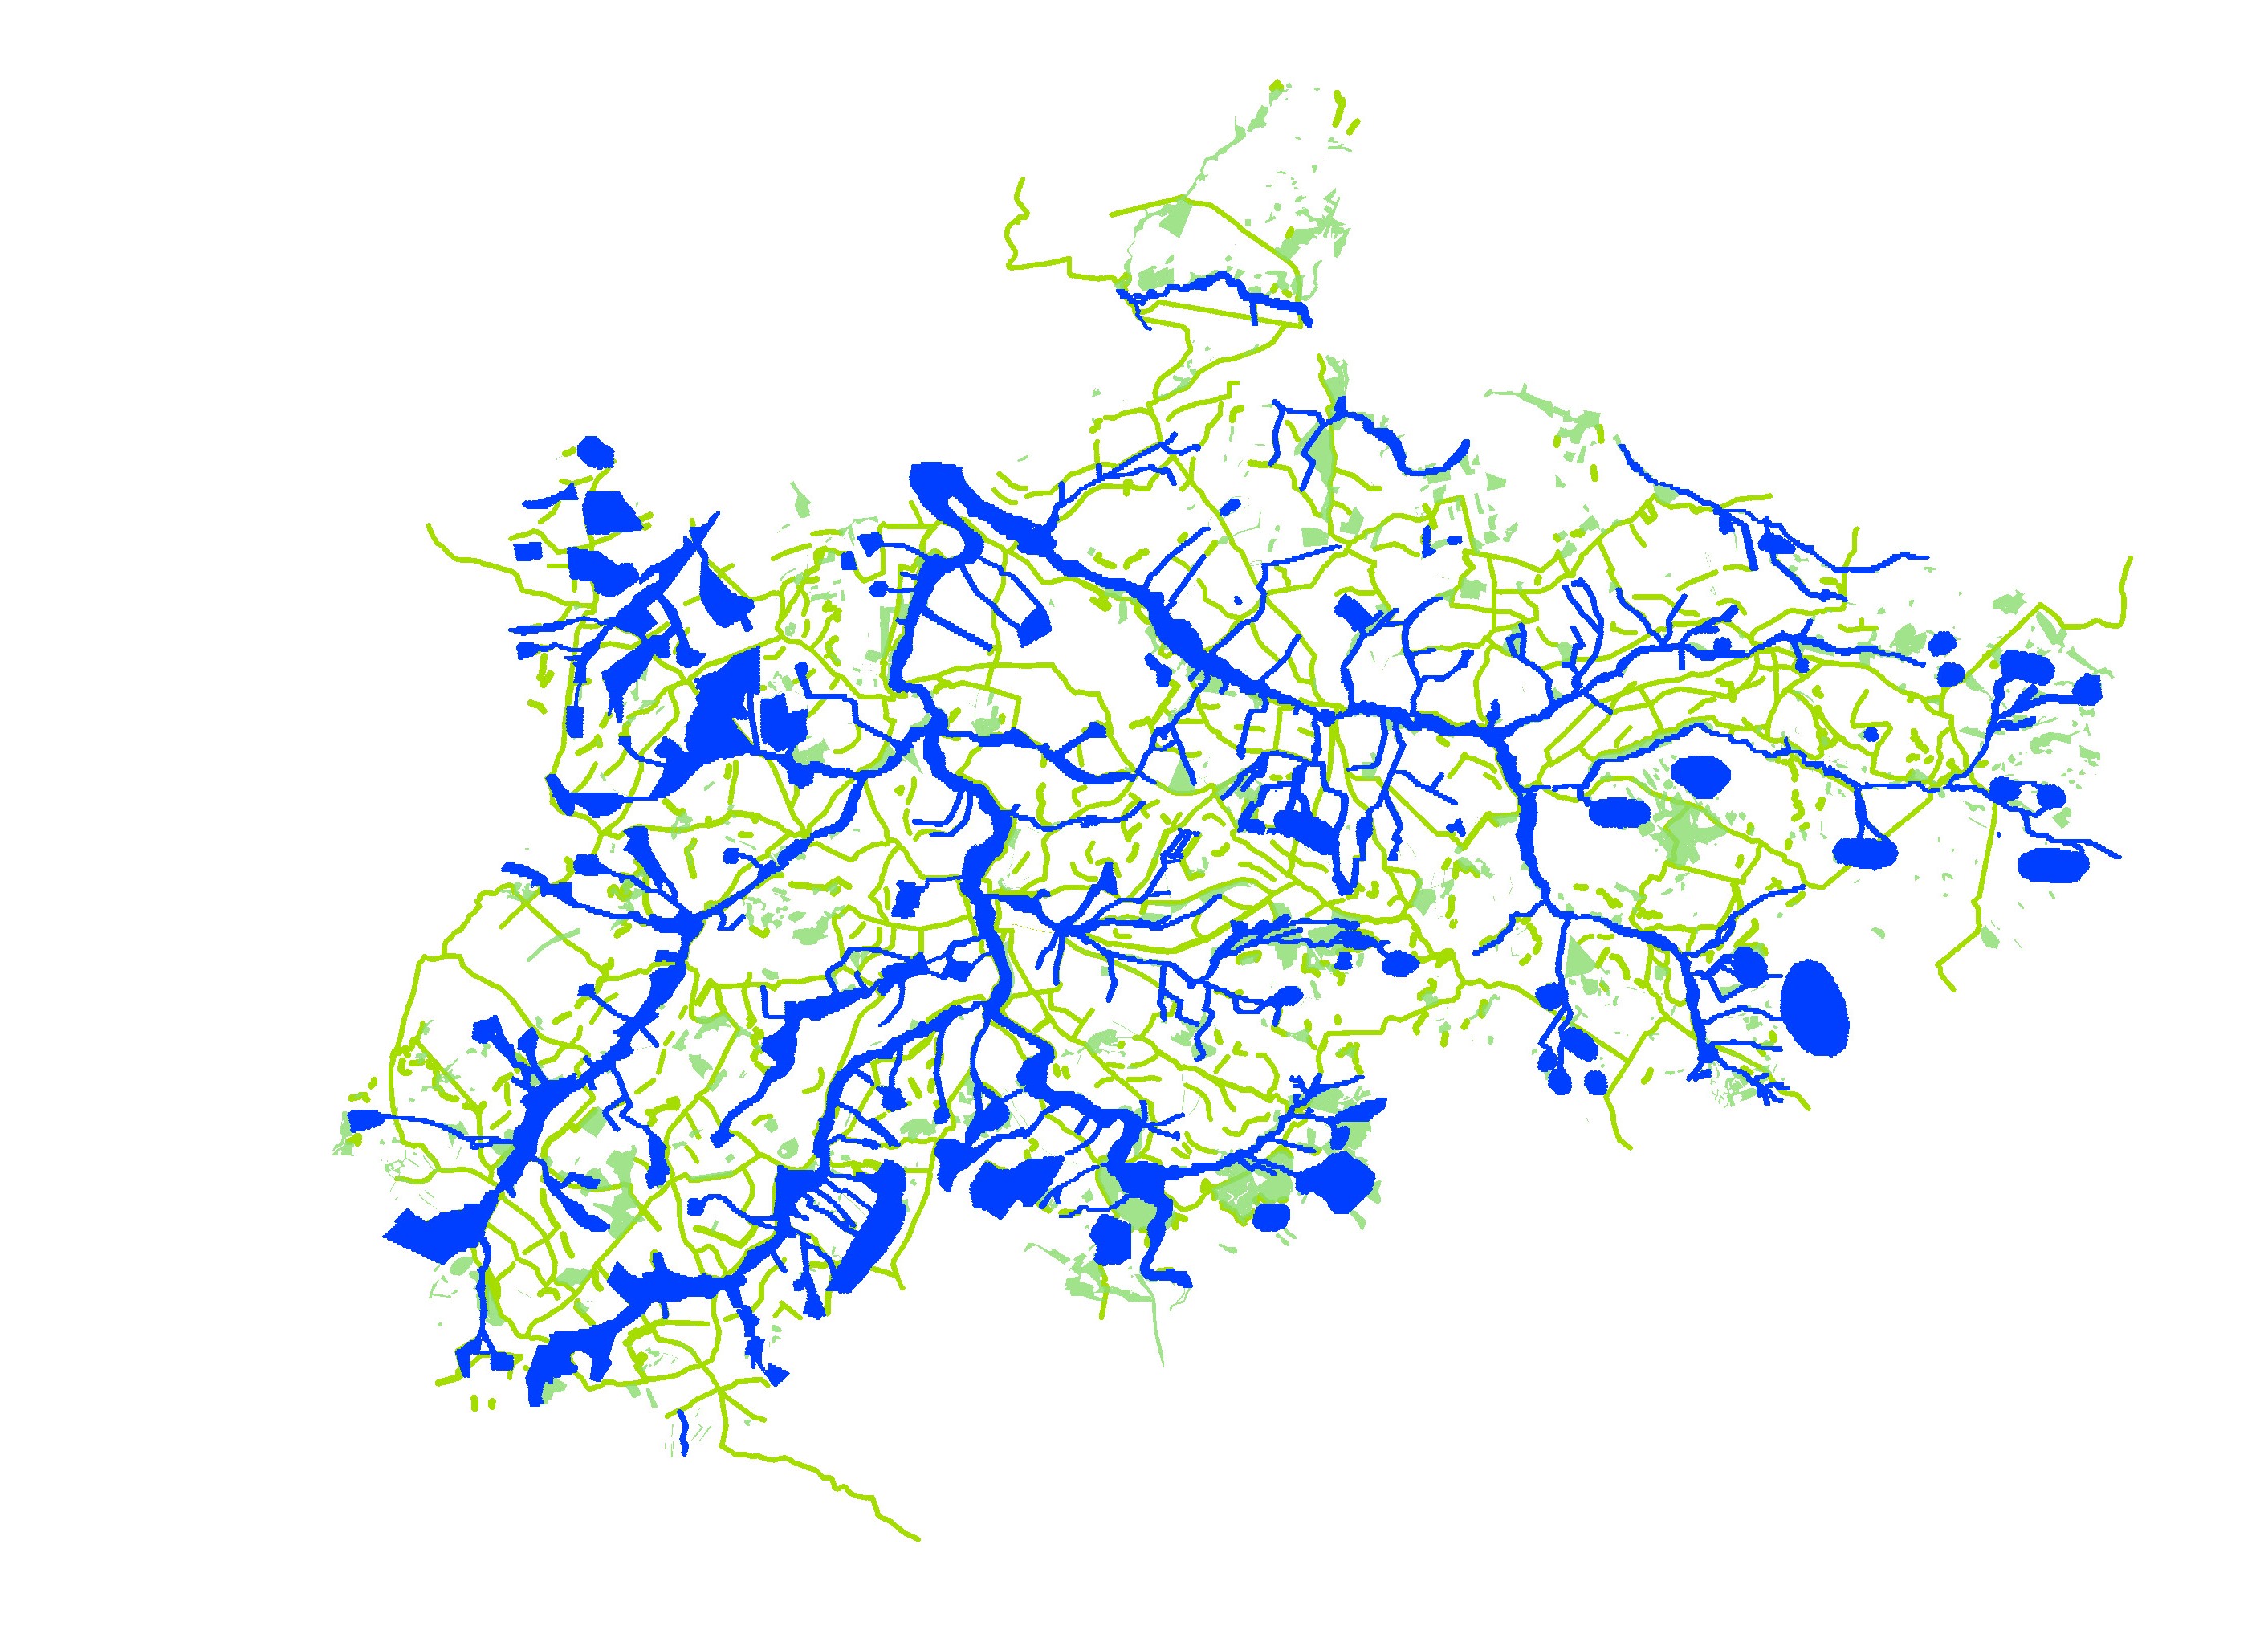 Schéma zelené infrastruktury v krajině ORP Blovice - modrá je systém říční krajiny a zelená systém biotopů podél technické infrastruktury. Územní studie krajiny ORP Blovice, 2018, Salzmann & kol.